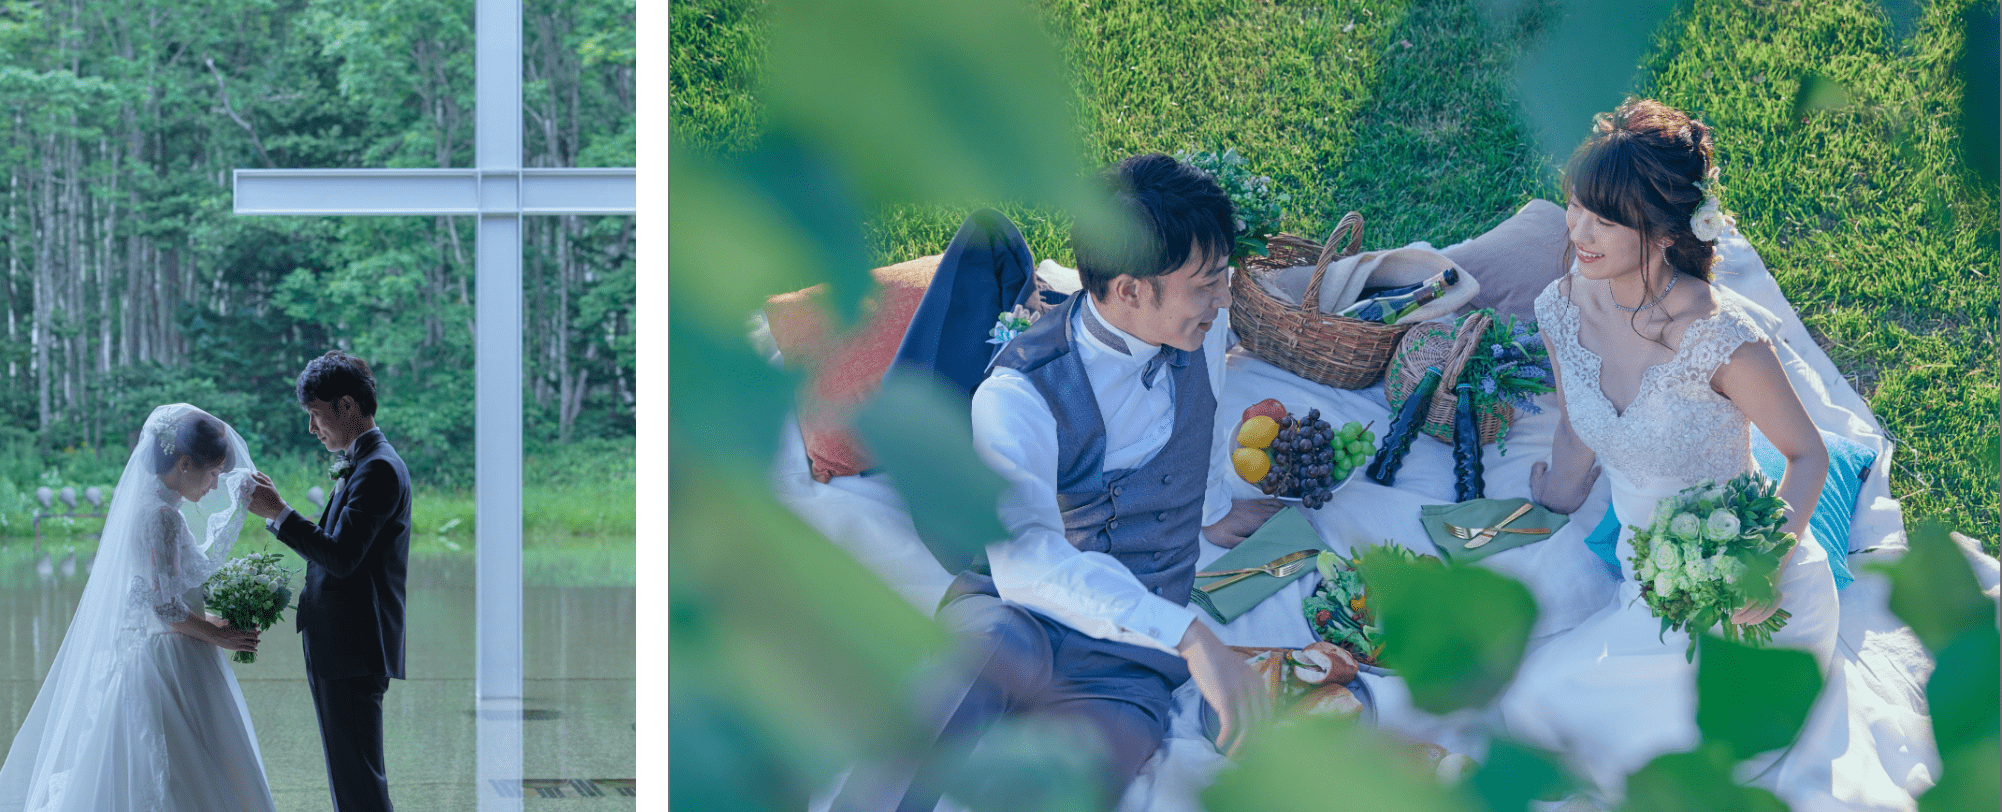 TOMAMU the WEDDINGのイメージ画像